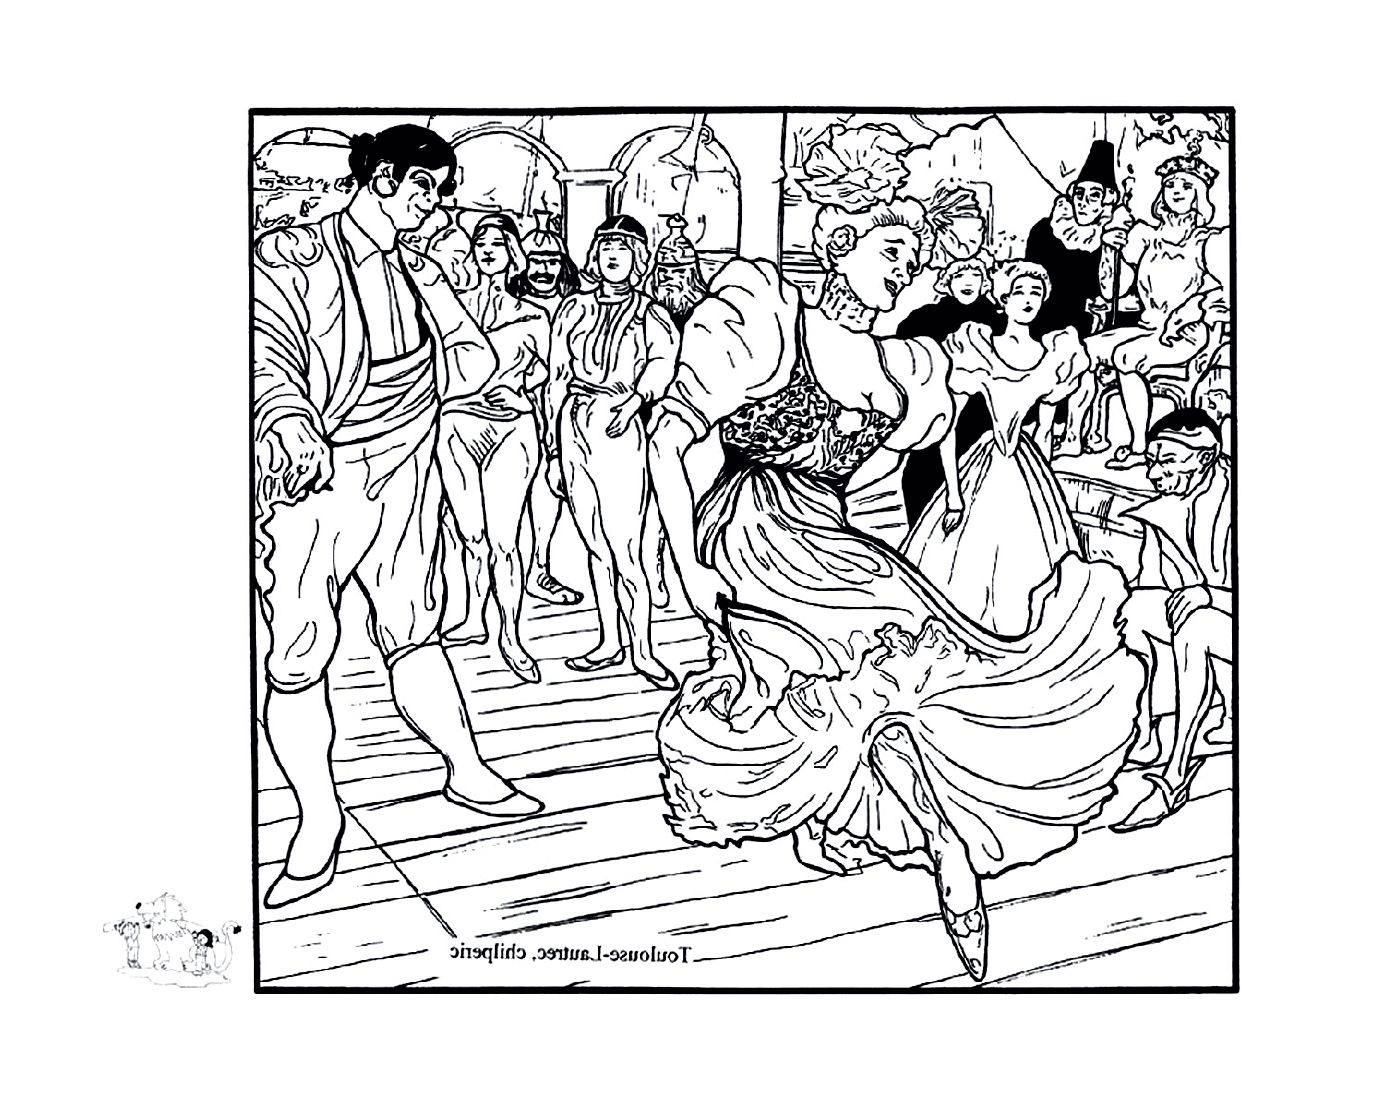  gente que baila en una fiesta como Toulouse-Lautrec 